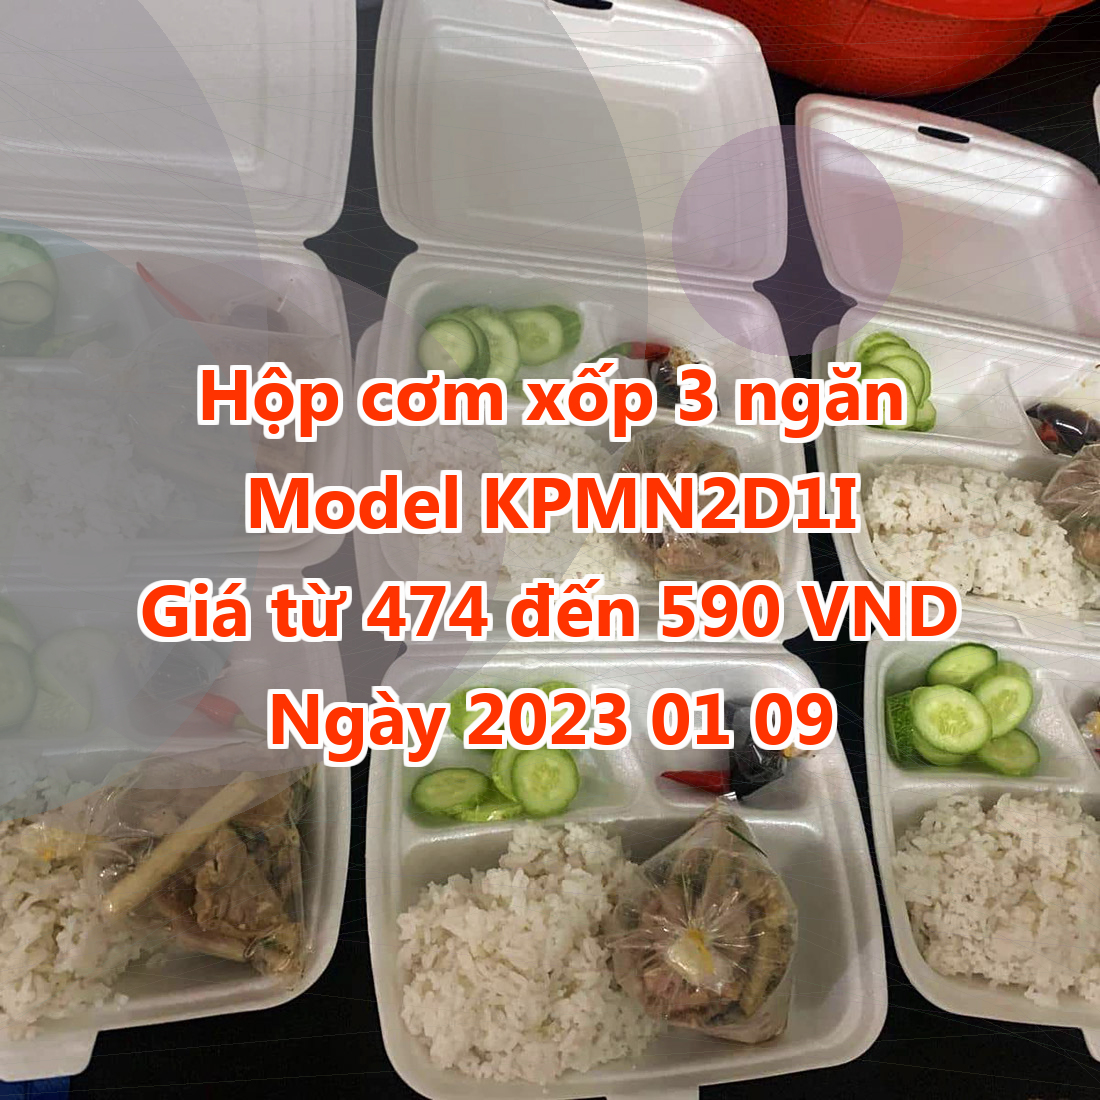 Hộp cơm xốp 3 ngăn - Model KPMN2D1I - Màu Orchid